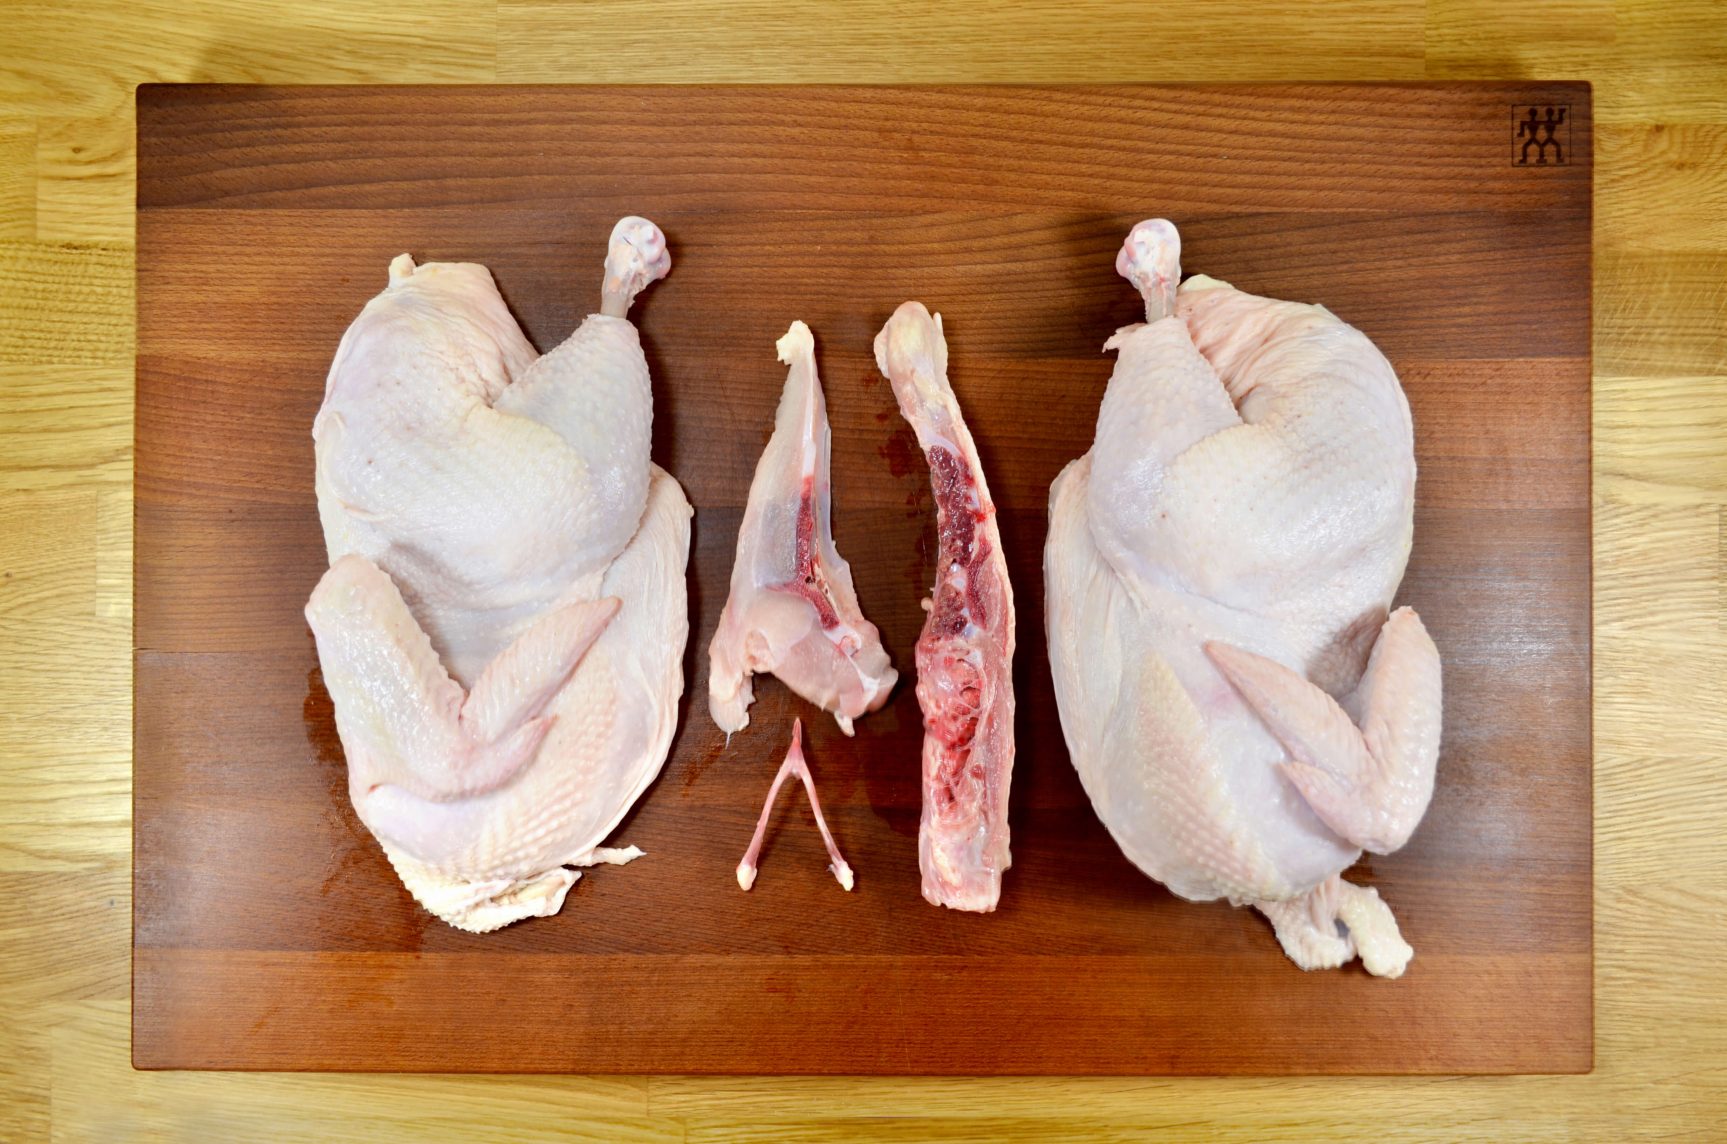 Recept / Dokonalé kura / Pracovný postup / Prepoľte a vyčistite kura